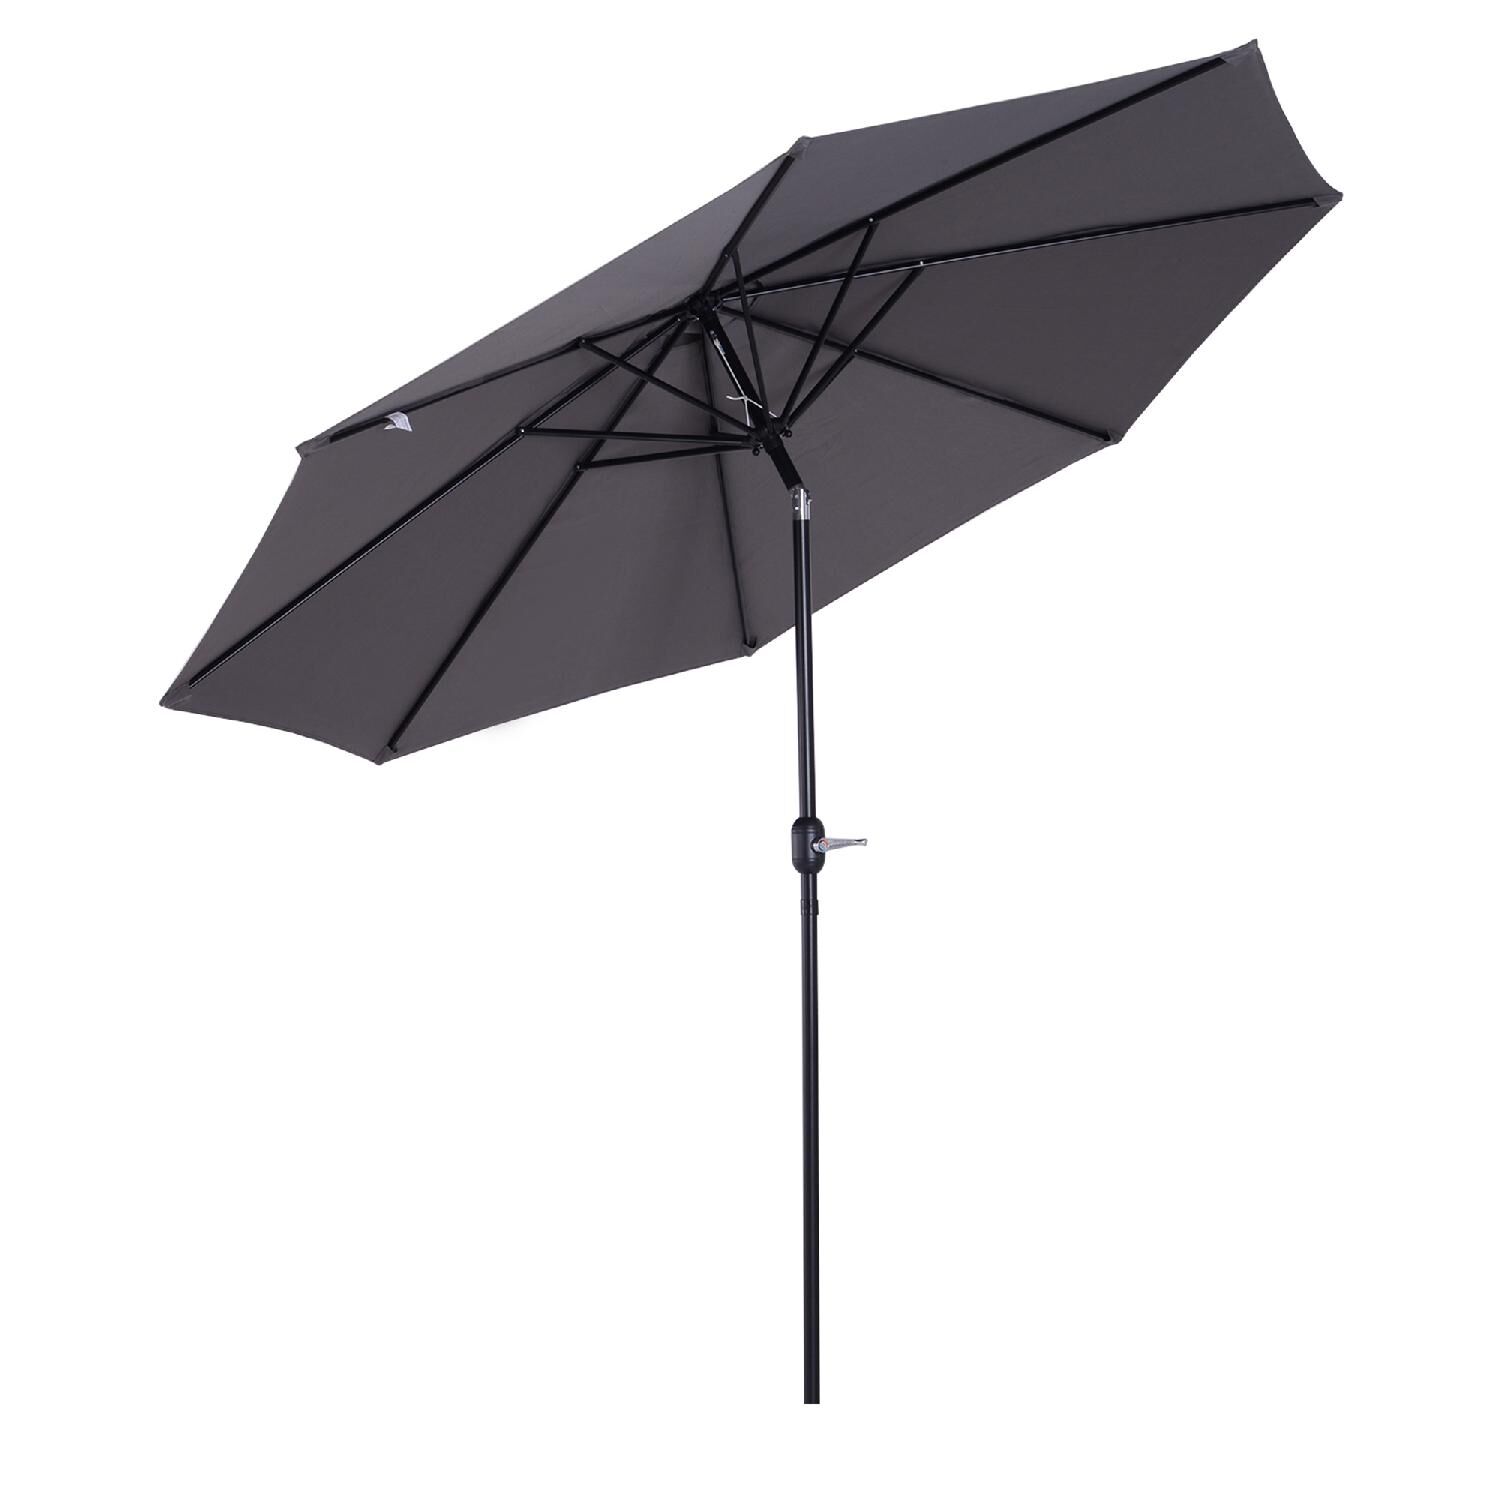 dechome 070cg840 ombrellone da giardino 3x3 mt in metallo telo in poliestere inclinabile colore grigio scuro - 070cg840